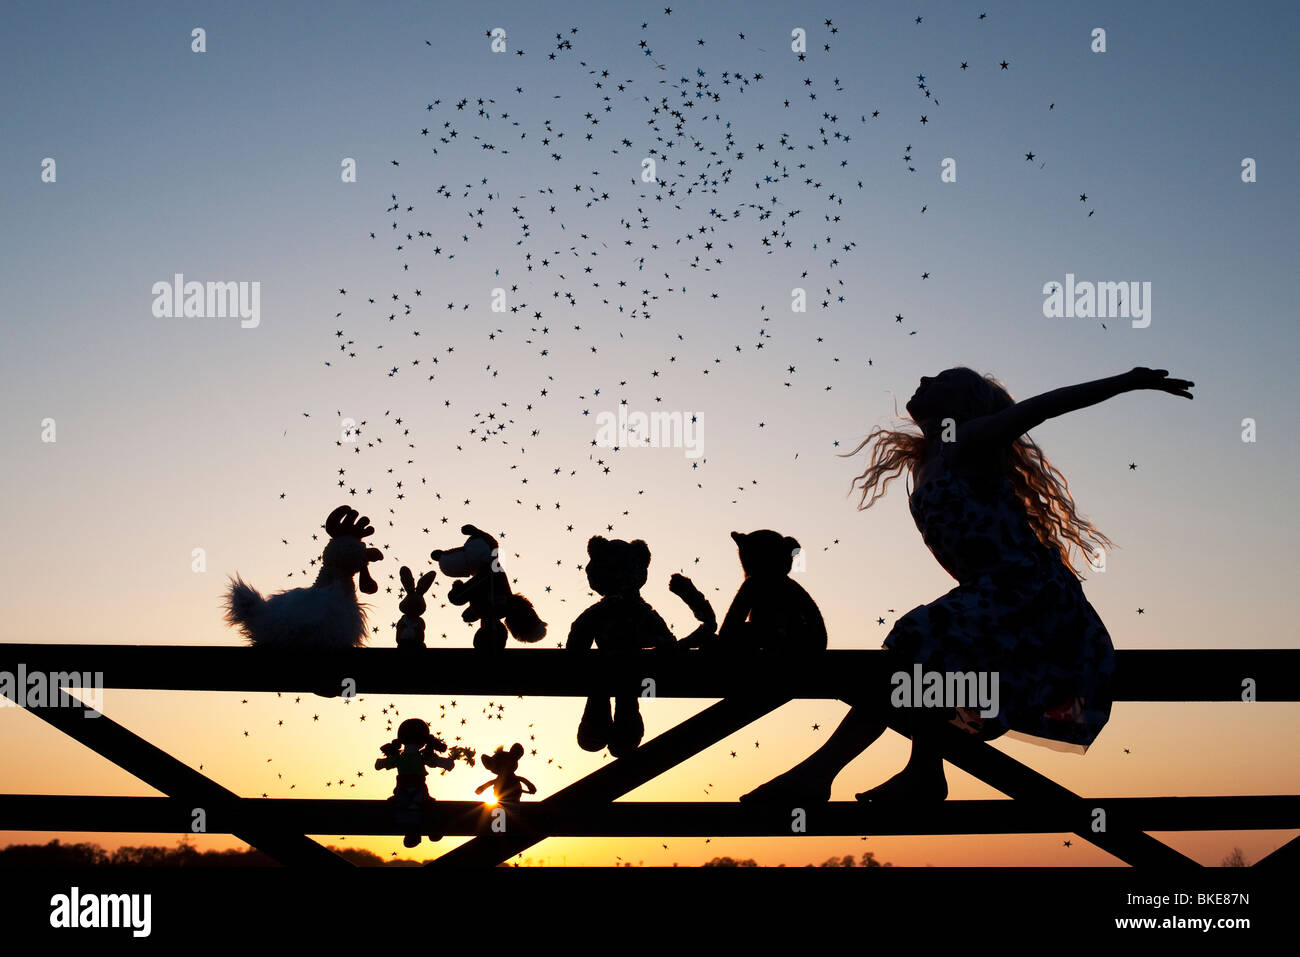 Fille projetant des étoiles sur une poupée de chiffon, le poulet, le renard, le lapin, le chat et les ours en peluche peluches assis sur une barrière au coucher du soleil. Silhouette Banque D'Images